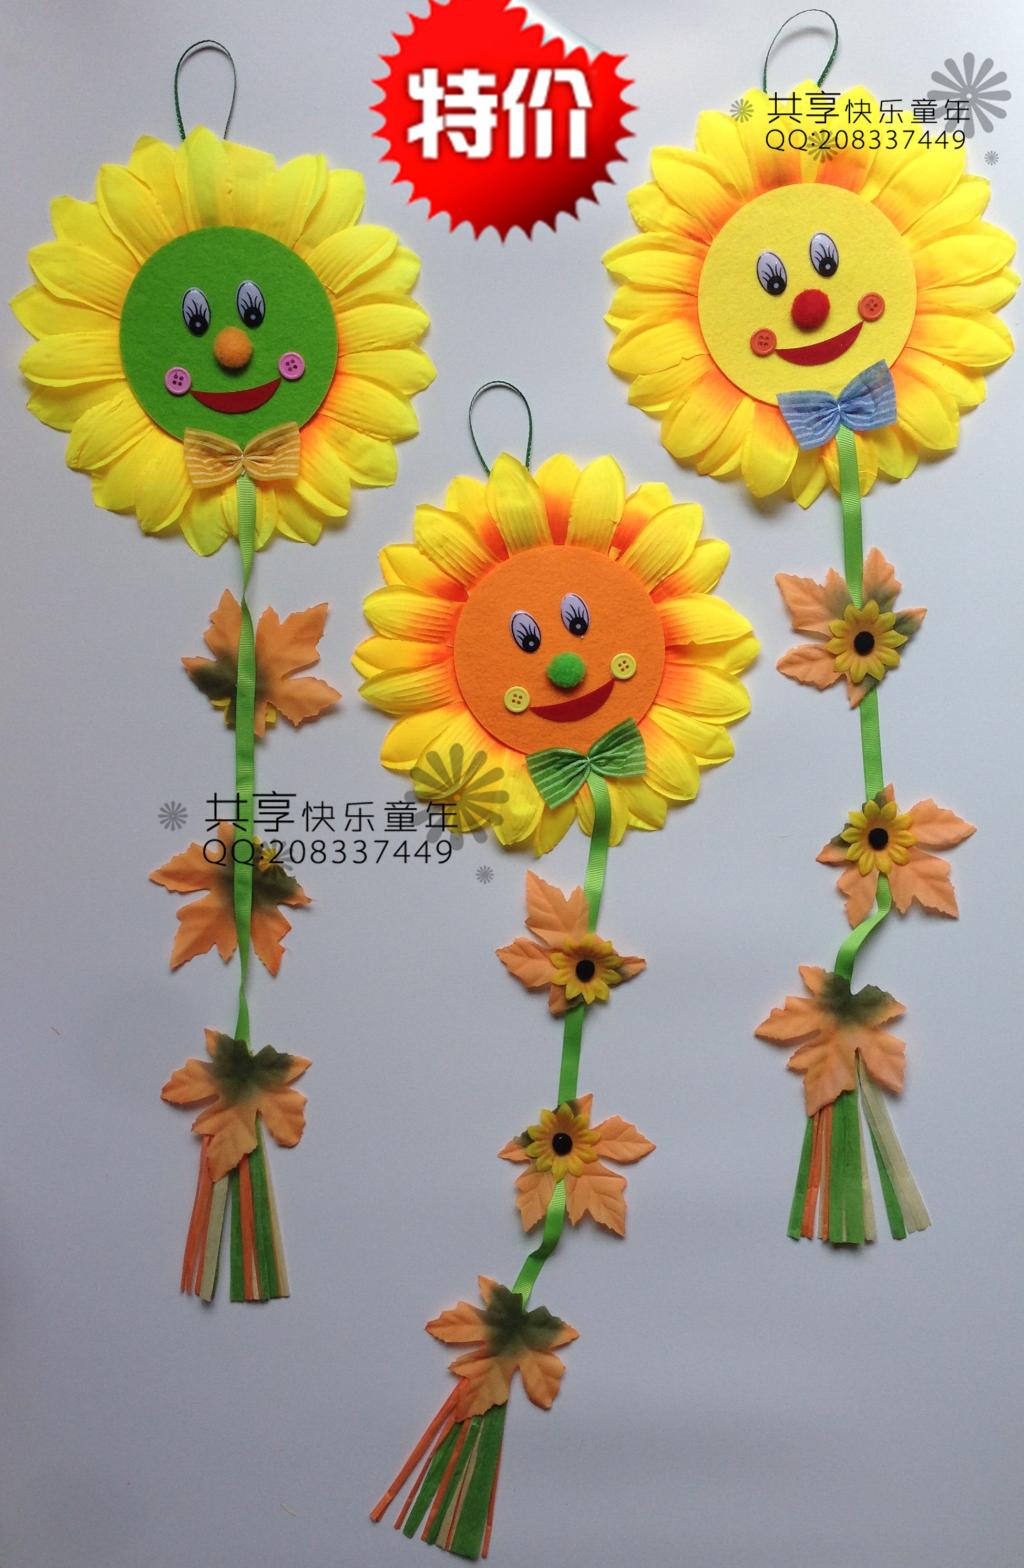 幼儿园教室环境布置装饰品向日葵节日室内外走廊新型太阳花挂饰